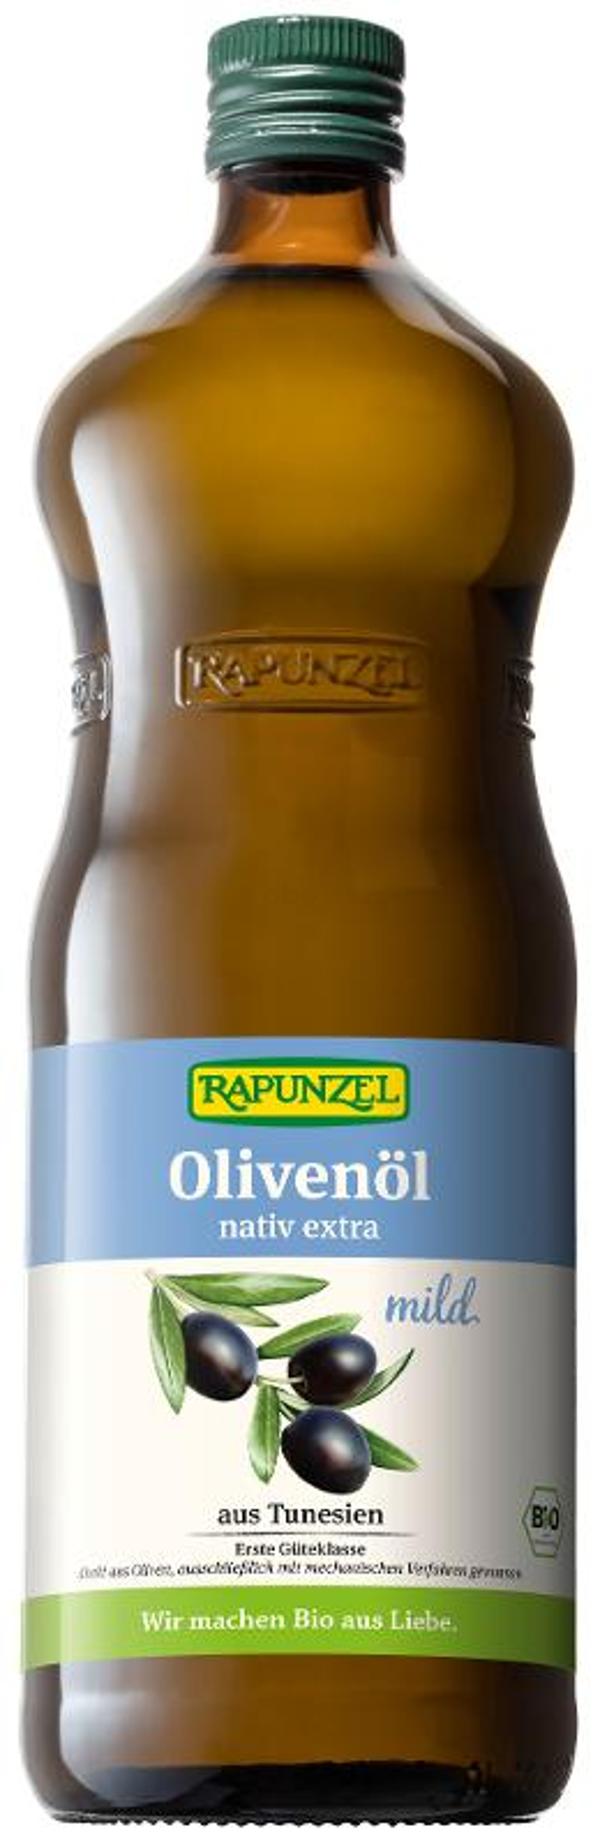 Produktfoto zu Olivenöl "nativ" extra mild 1l